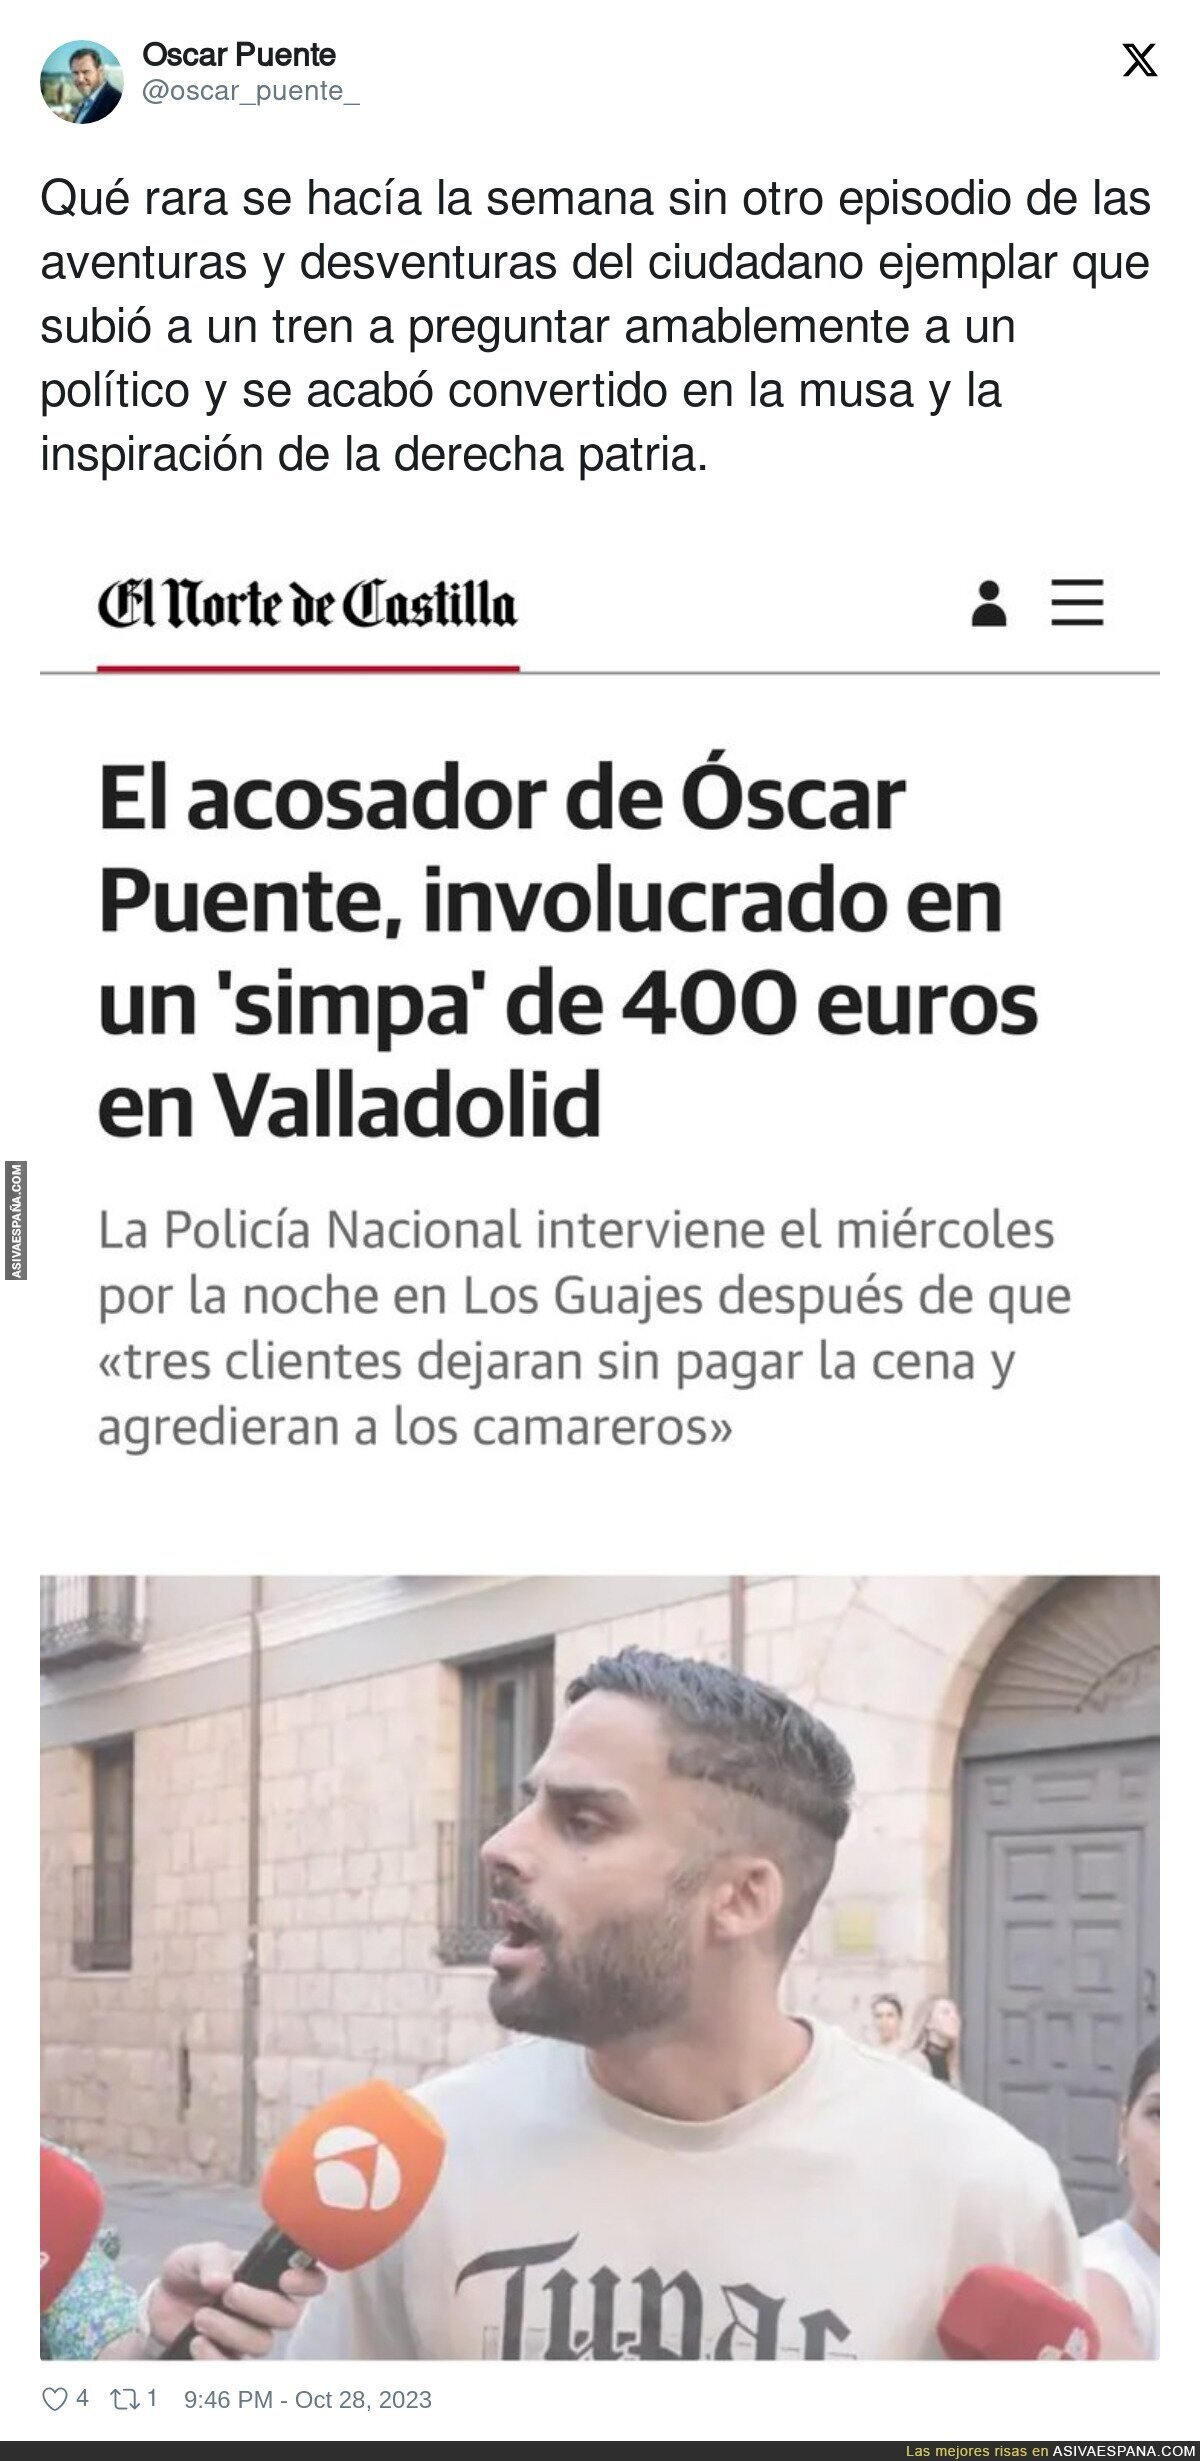 El acosador de Óscar Puente sigue haciendo de las suyas